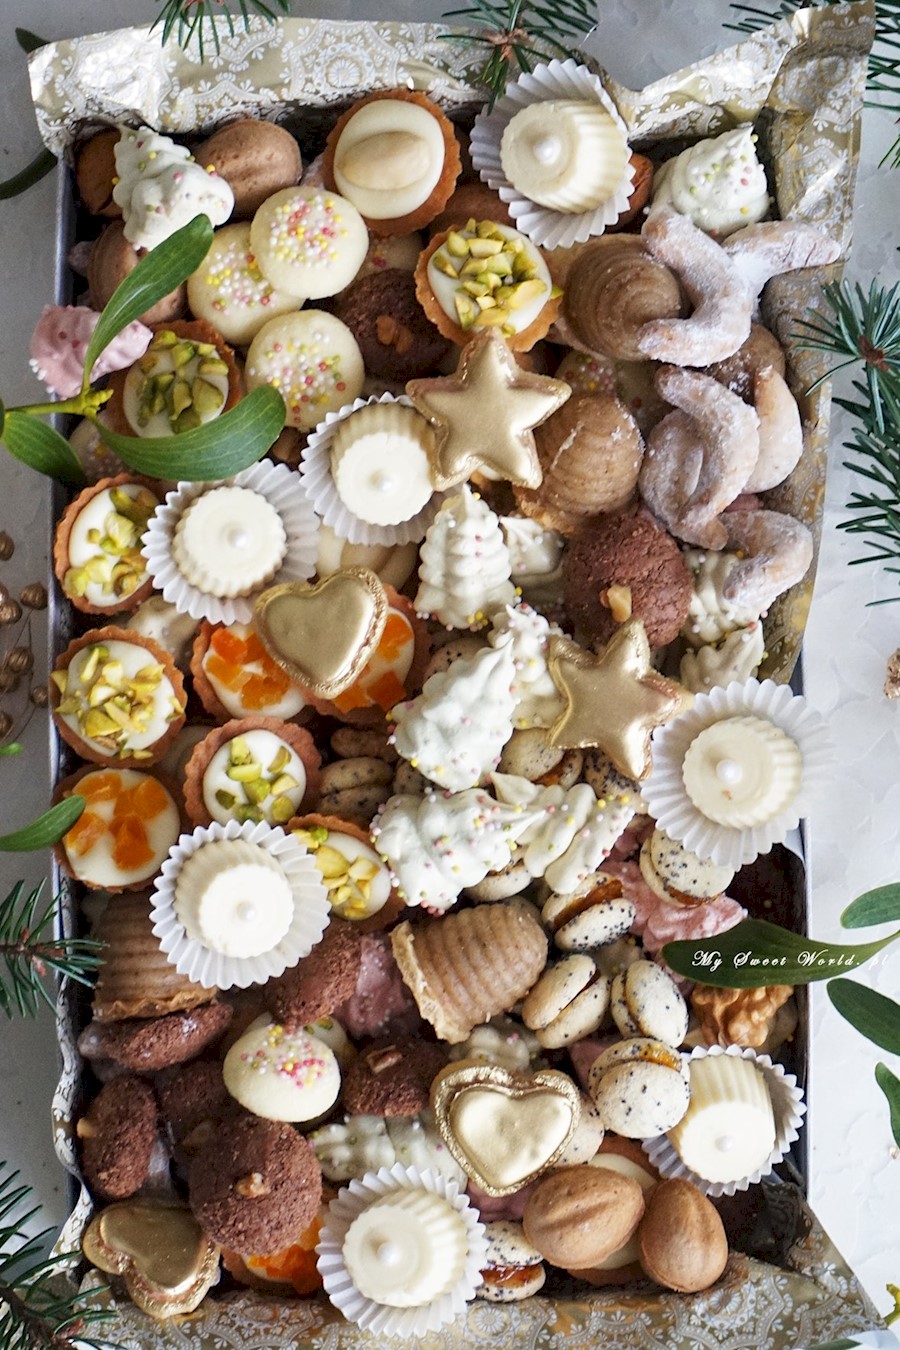 O pieczeniu świątecznych ciasteczek, małych sekretach i tradycjach <3